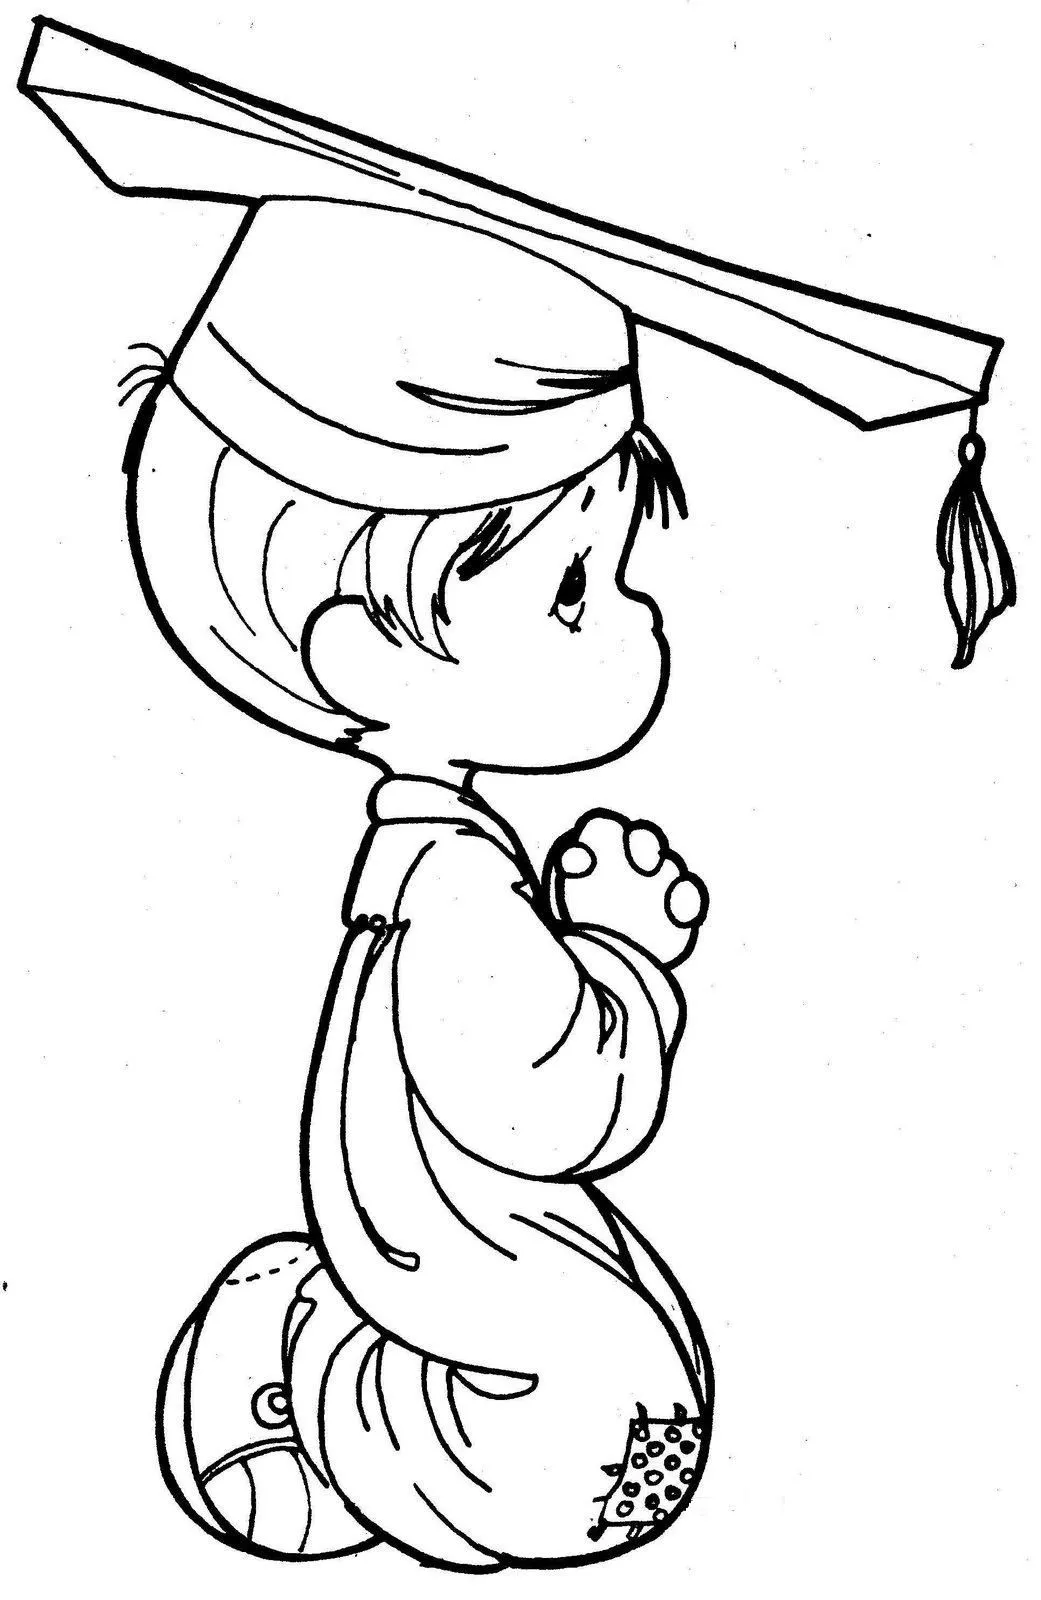 Dibujos de Precious moments de graduación - Imagui